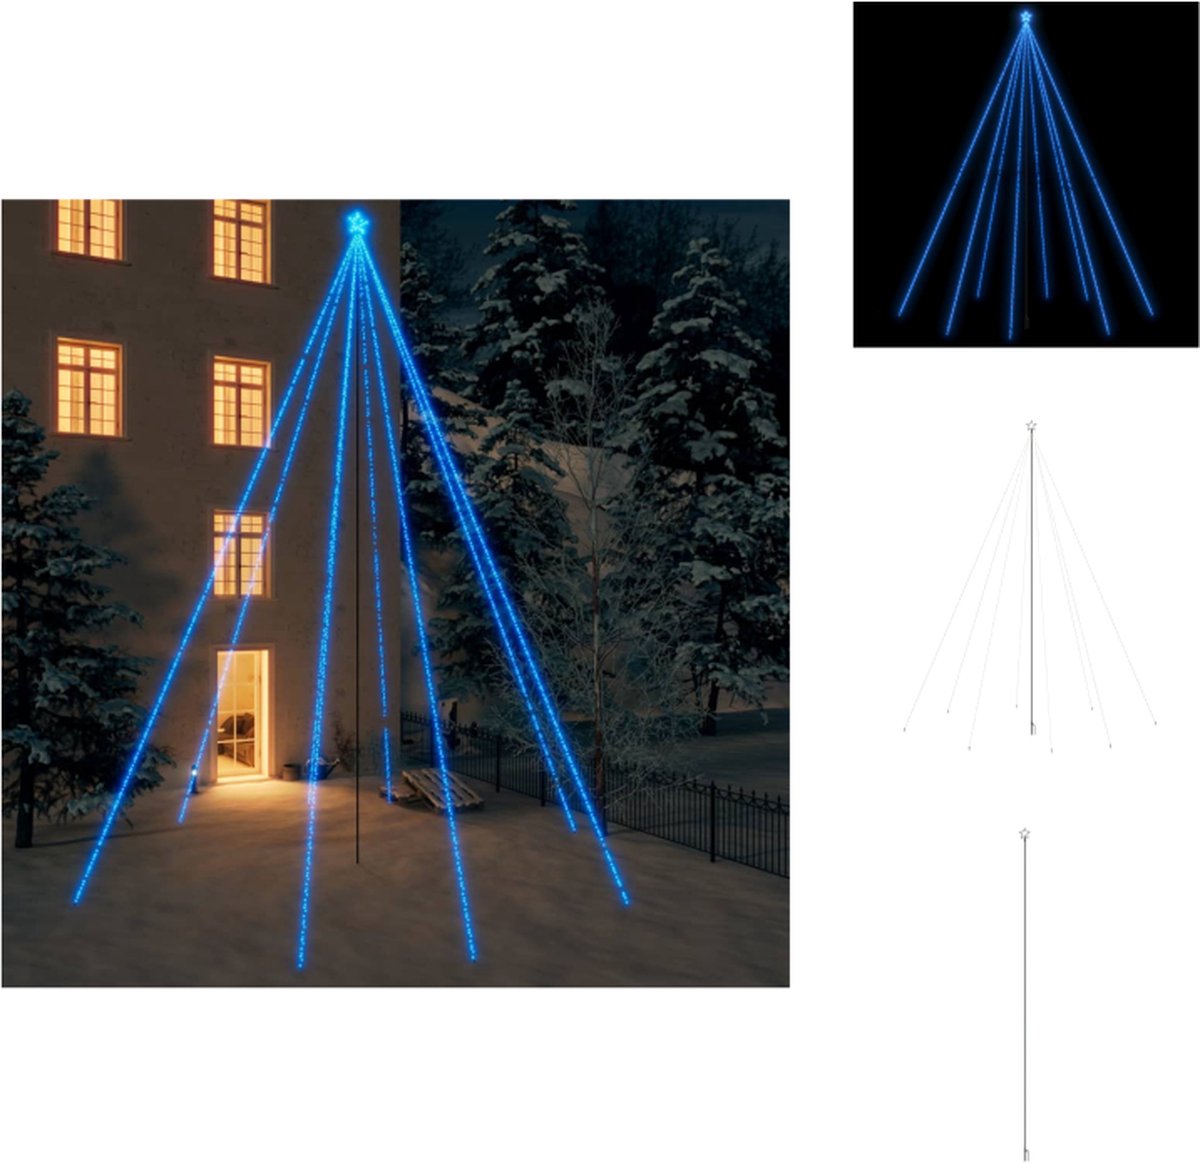 vidaXL Kerstboomverlichting - Watervalontwerp - 8.3 m LED-snoer - Blauw - 8 snoeren - IP44 - Decoratieve kerstboom